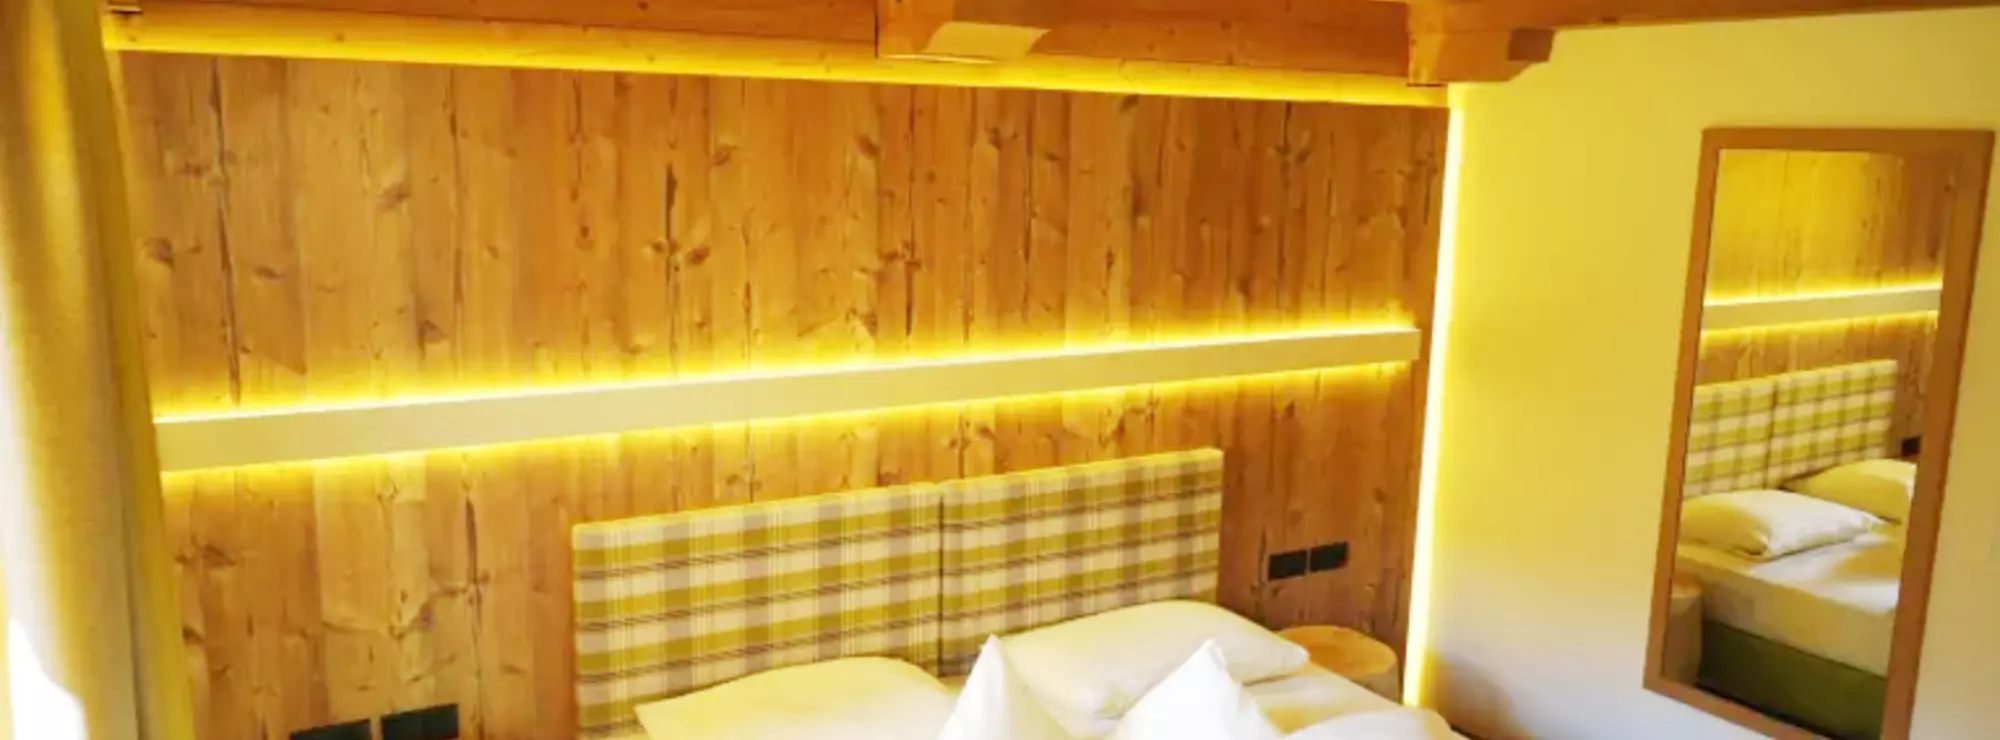 Hotelzimmer mit Holzdecken und -wänden, indirekter Beleuchtung und Nachttischen aus Baumstämmen